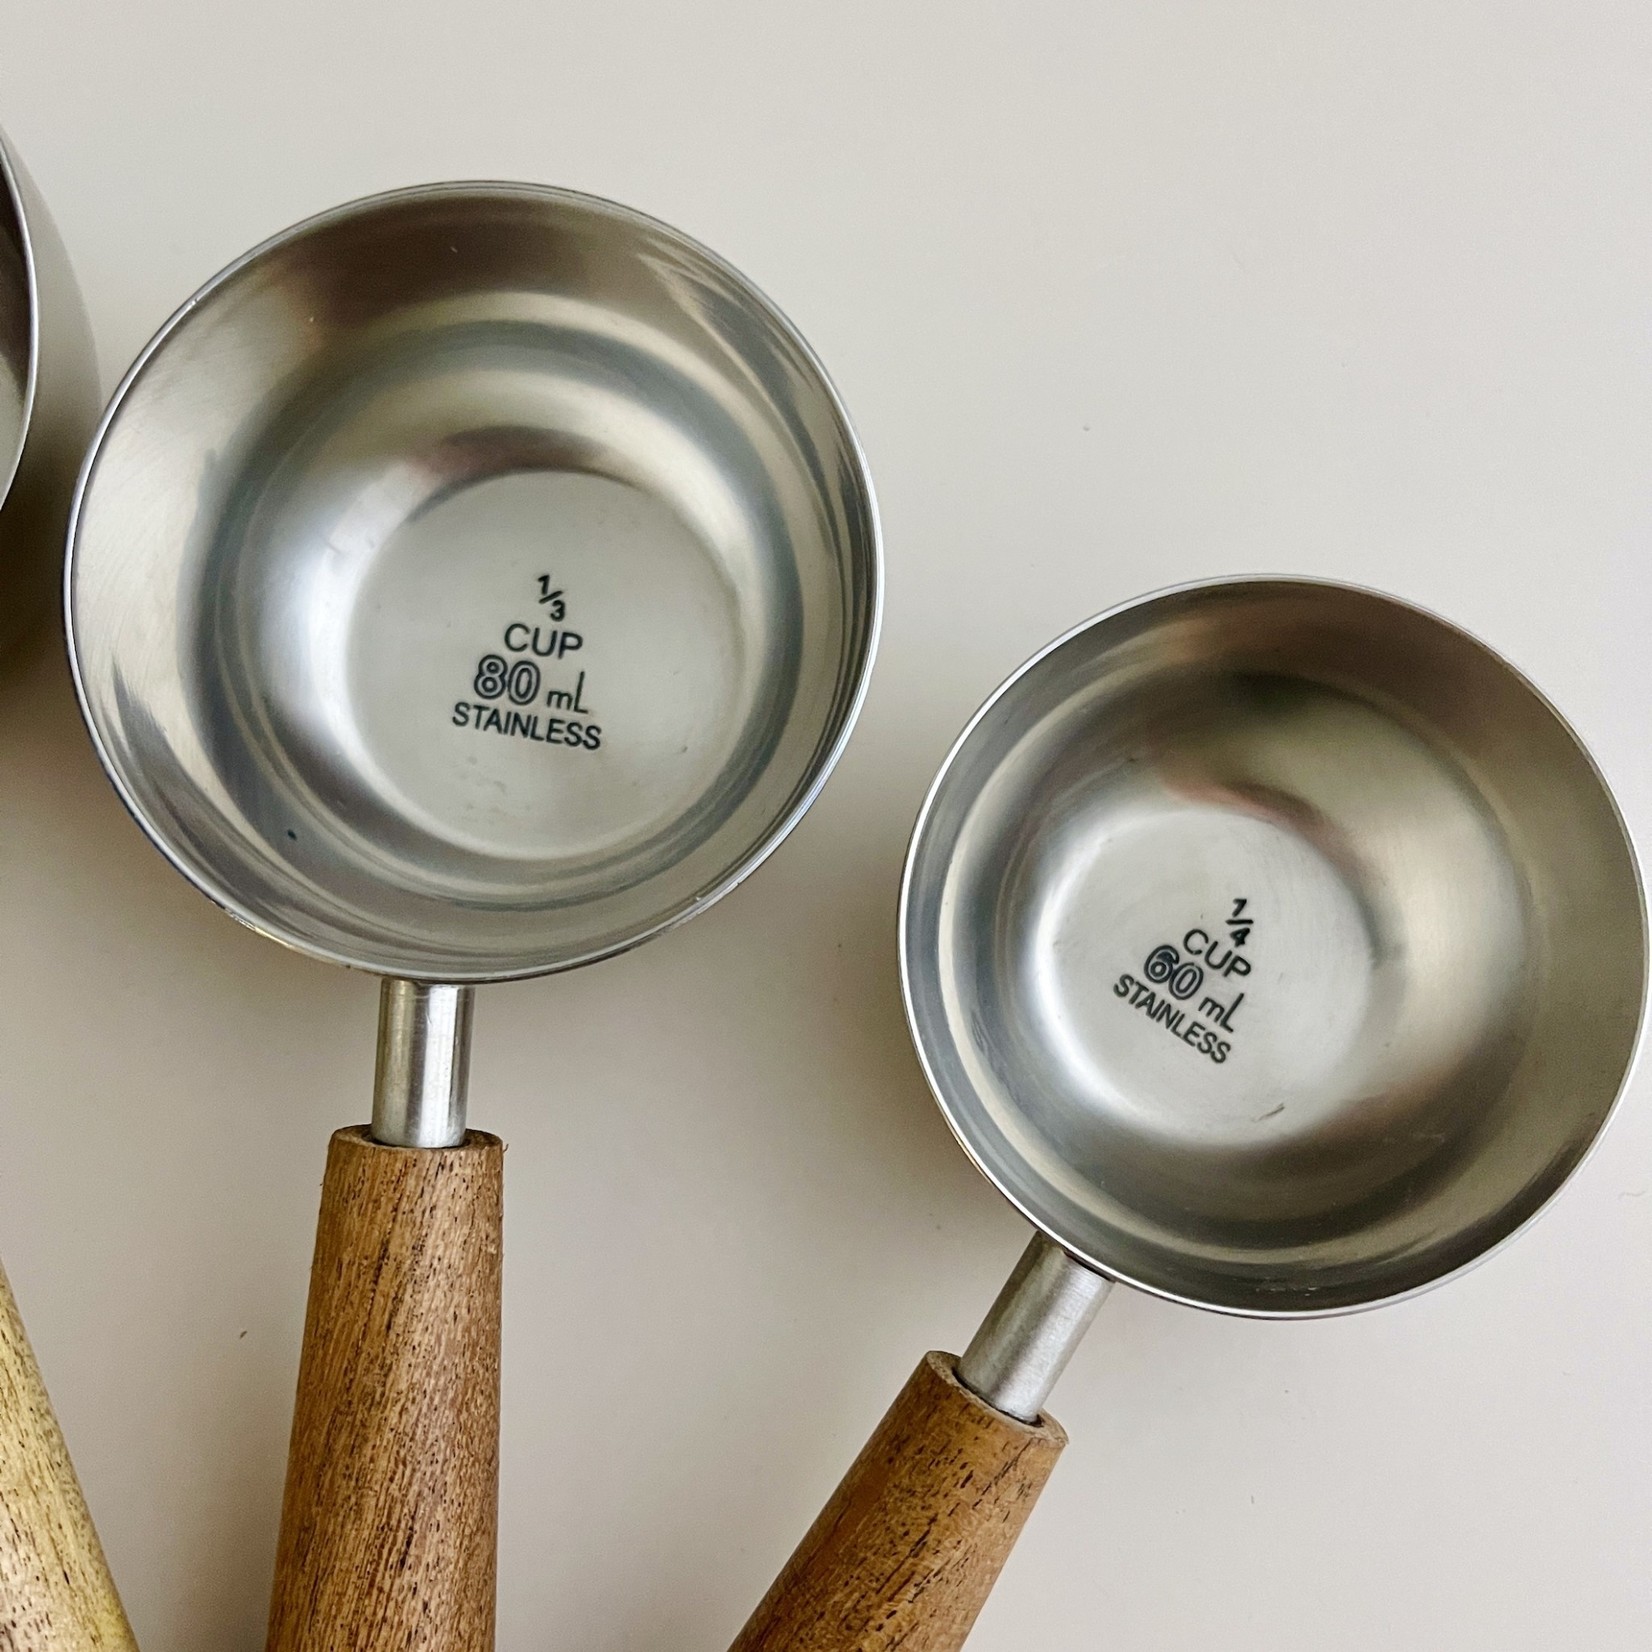 Silver and Acacia Wood Kitchen Tools